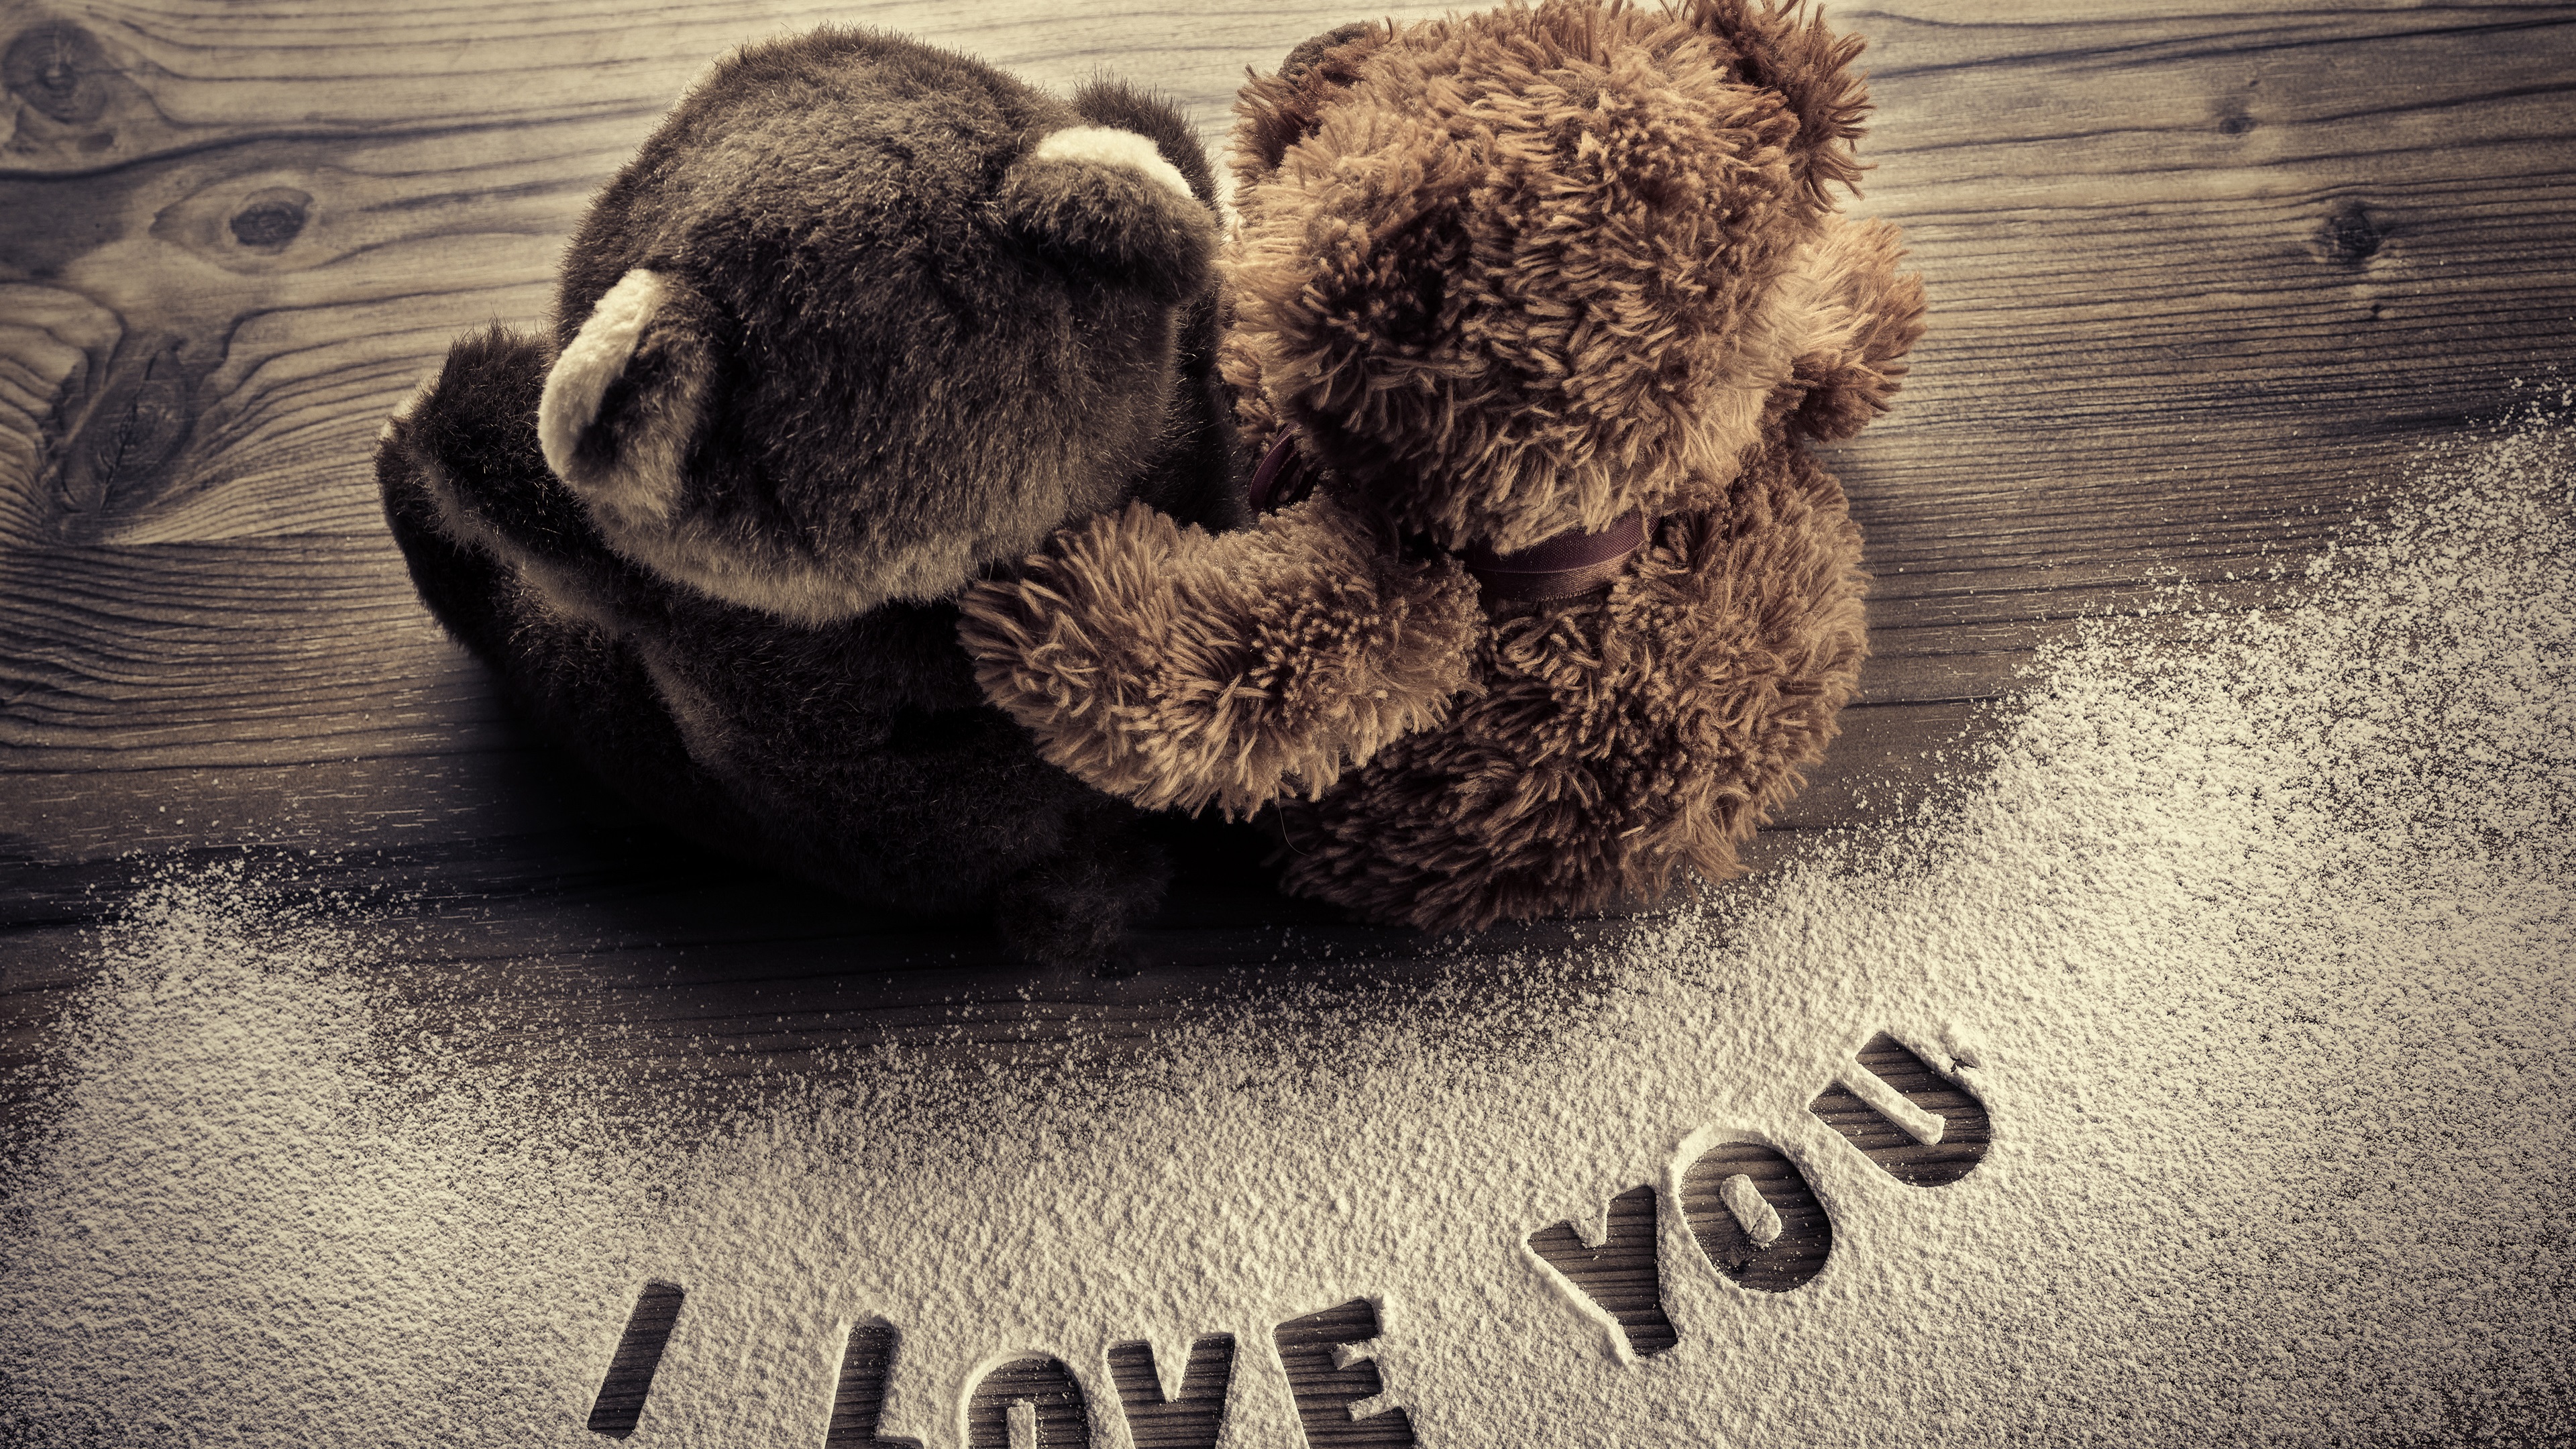 Wallpaper I Love You, Teddy Bears, Romantic - Ich Liebe Dich Romantisch - HD Wallpaper 